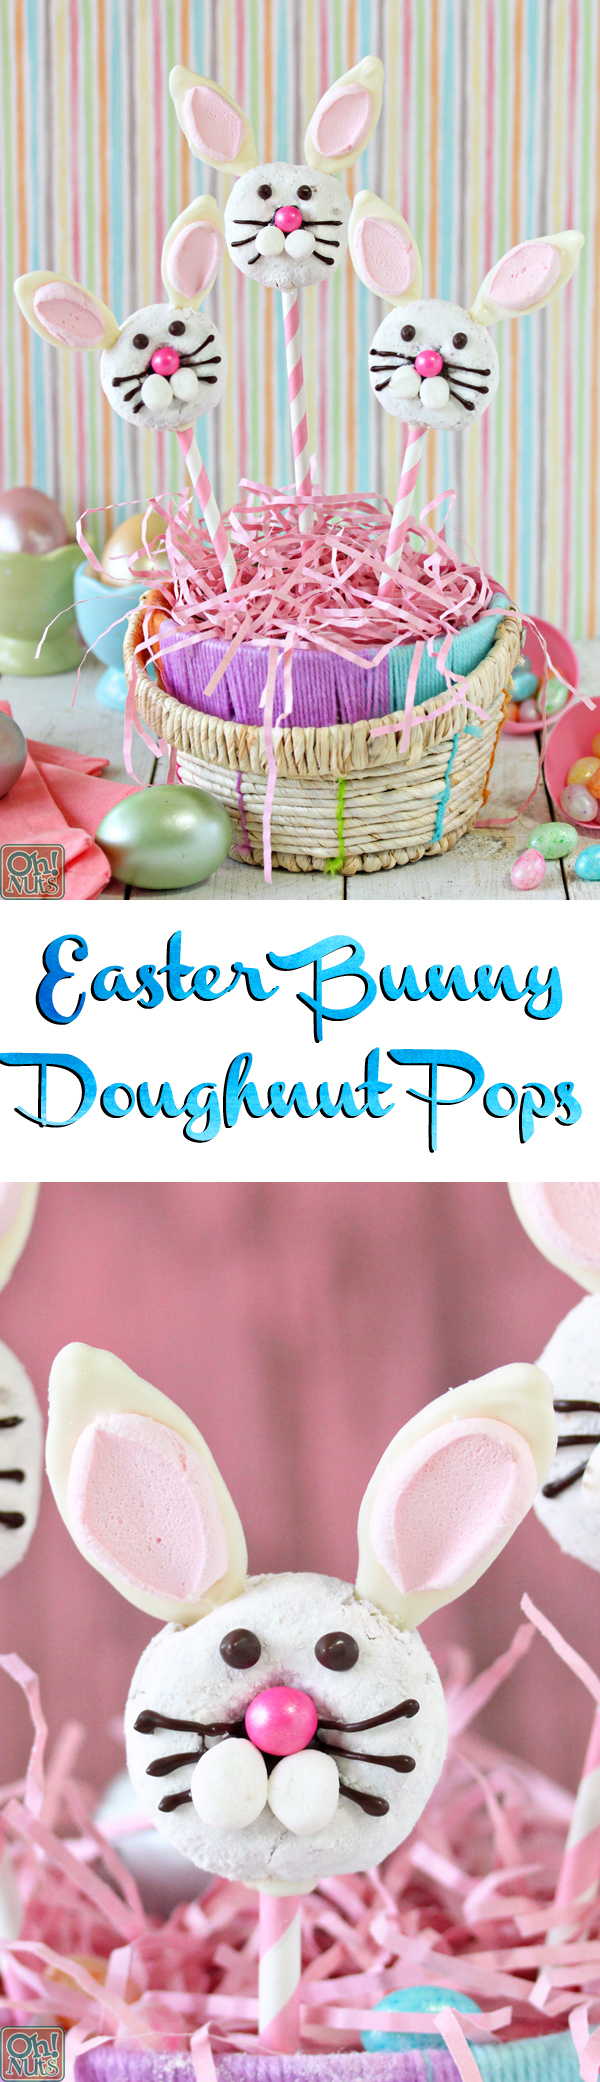 Easter Bunny Doughnut Pops | From OhNuts.com